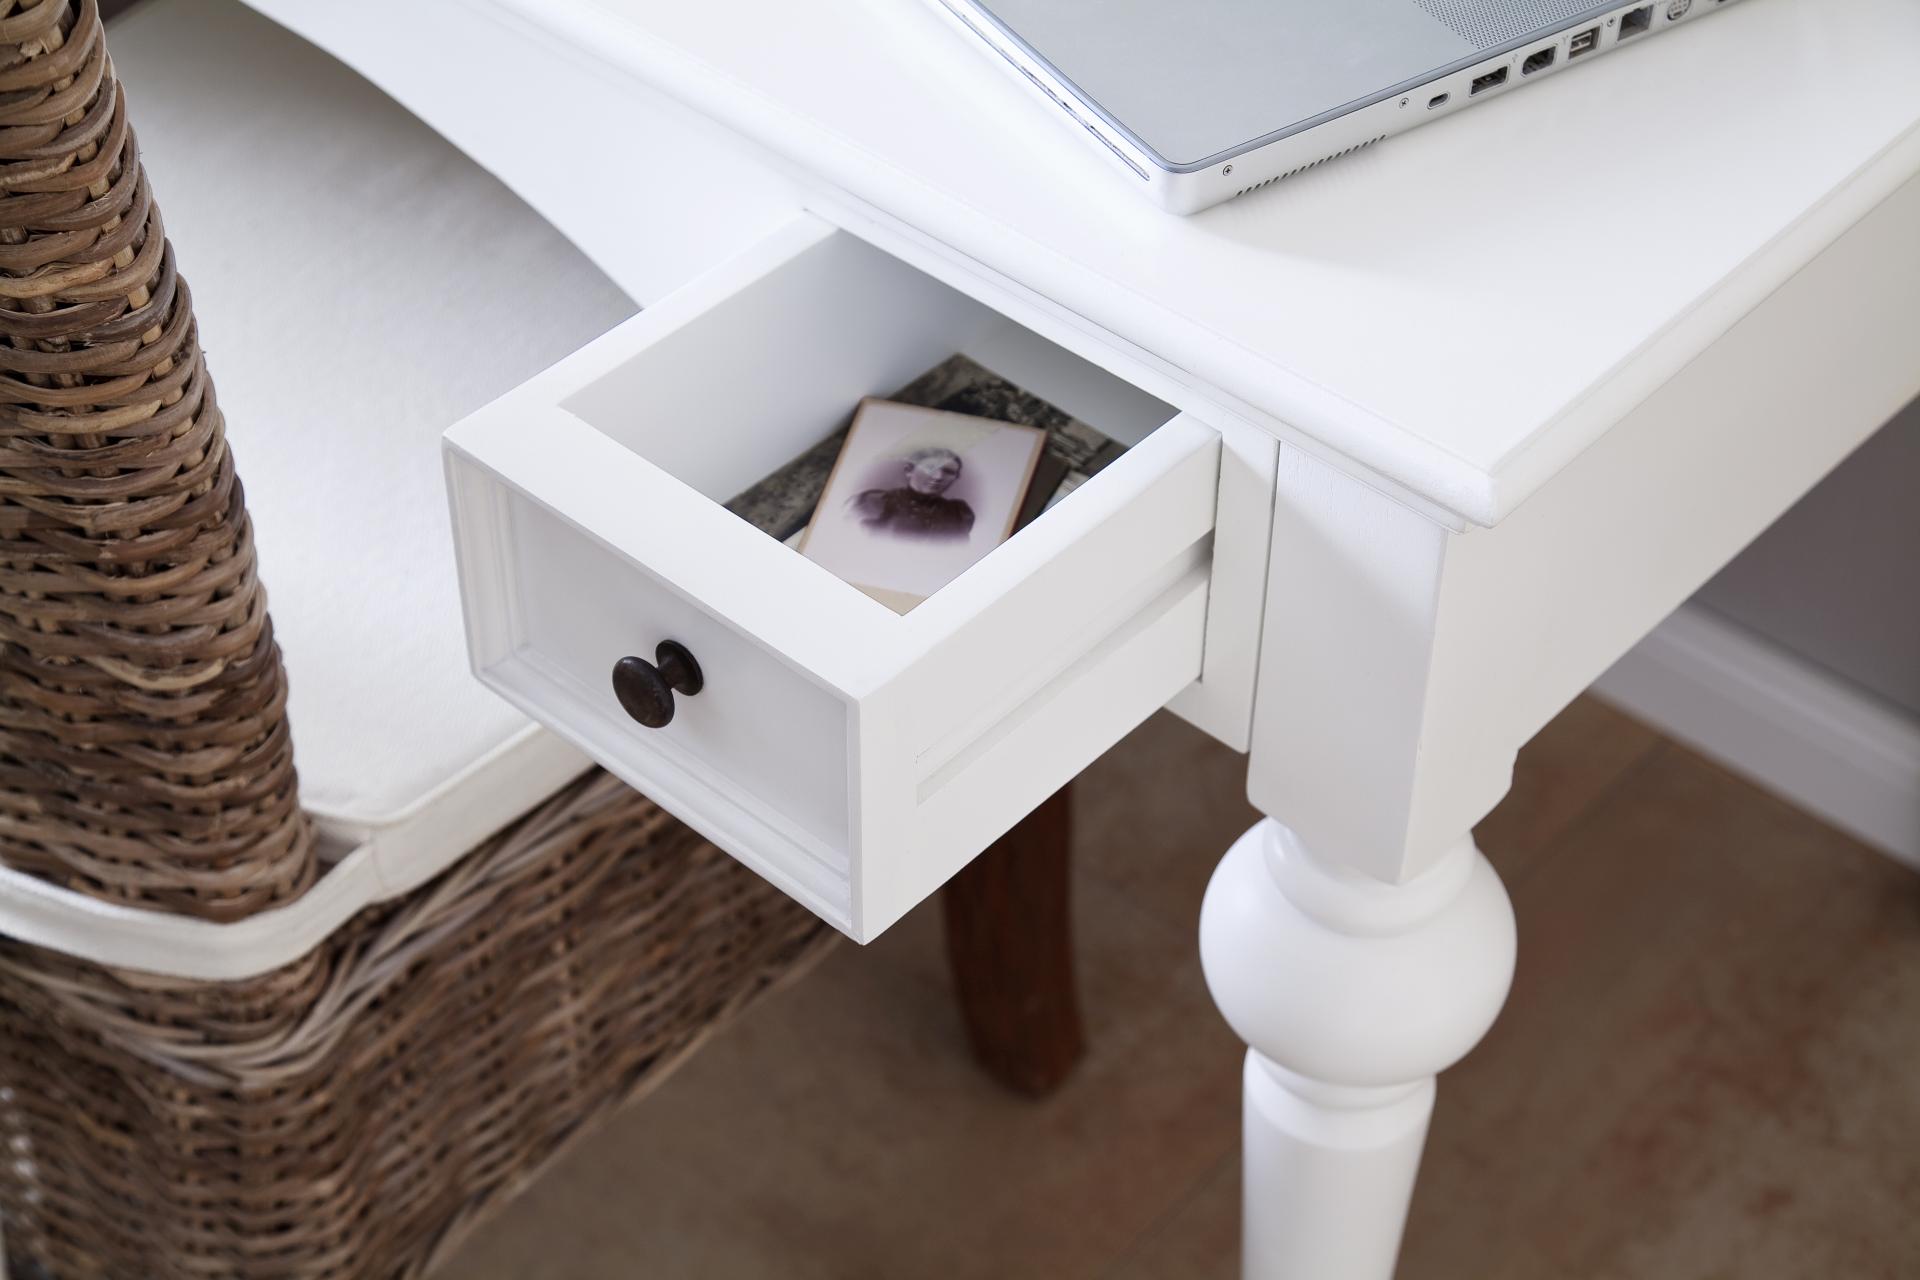 Der Schreibtisch Provence überzeugt mit seinem Landhaus Stil. Gefertigt wurde er aus Mahagoni Holz, welches einen weißen Farbton besitzt. Der Schreibtisch verfügt über zwei Schubladen. Die Breite beträgt 120 cm.